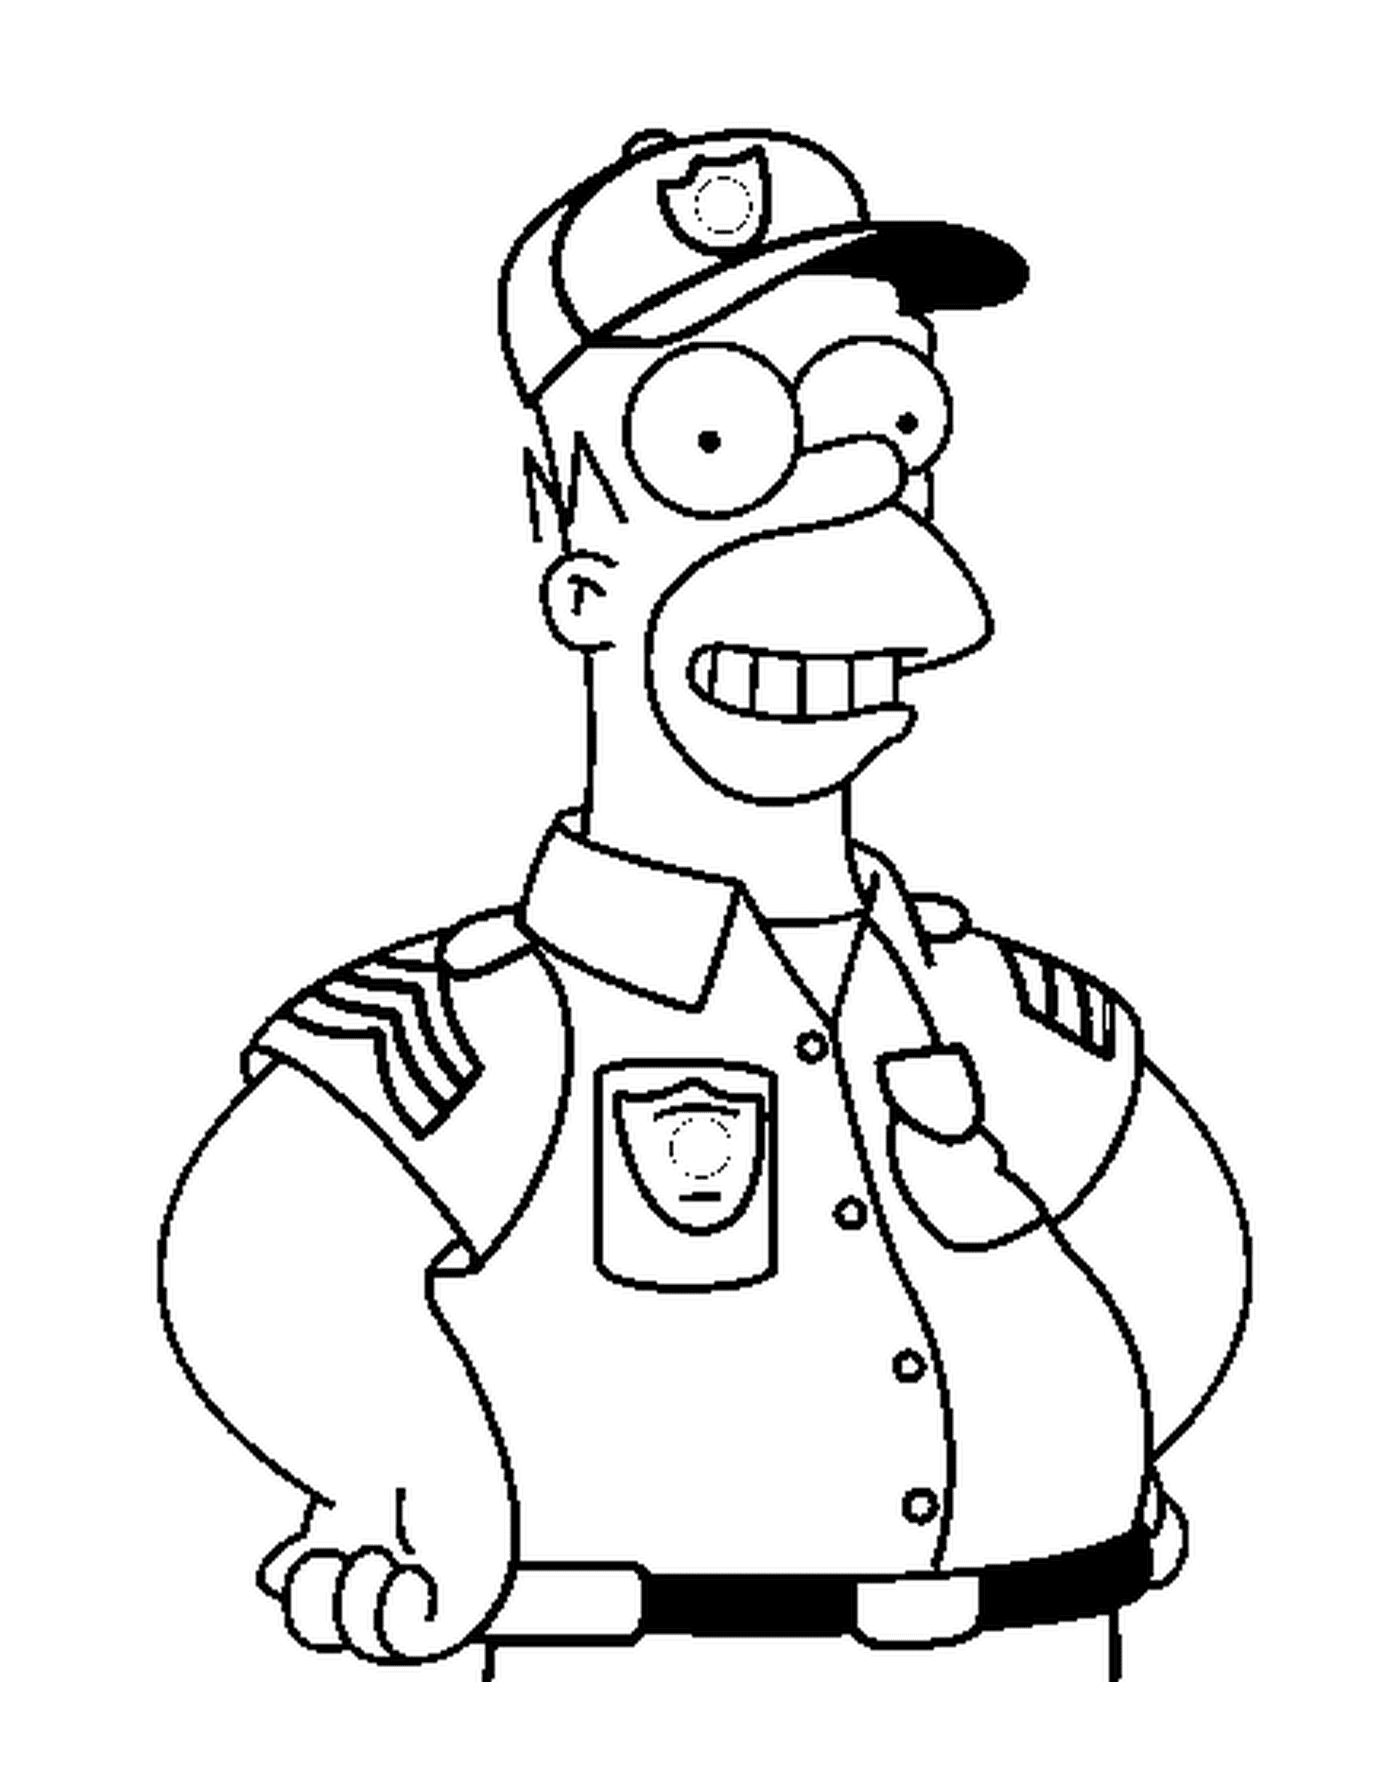  Homer como um valente policial 